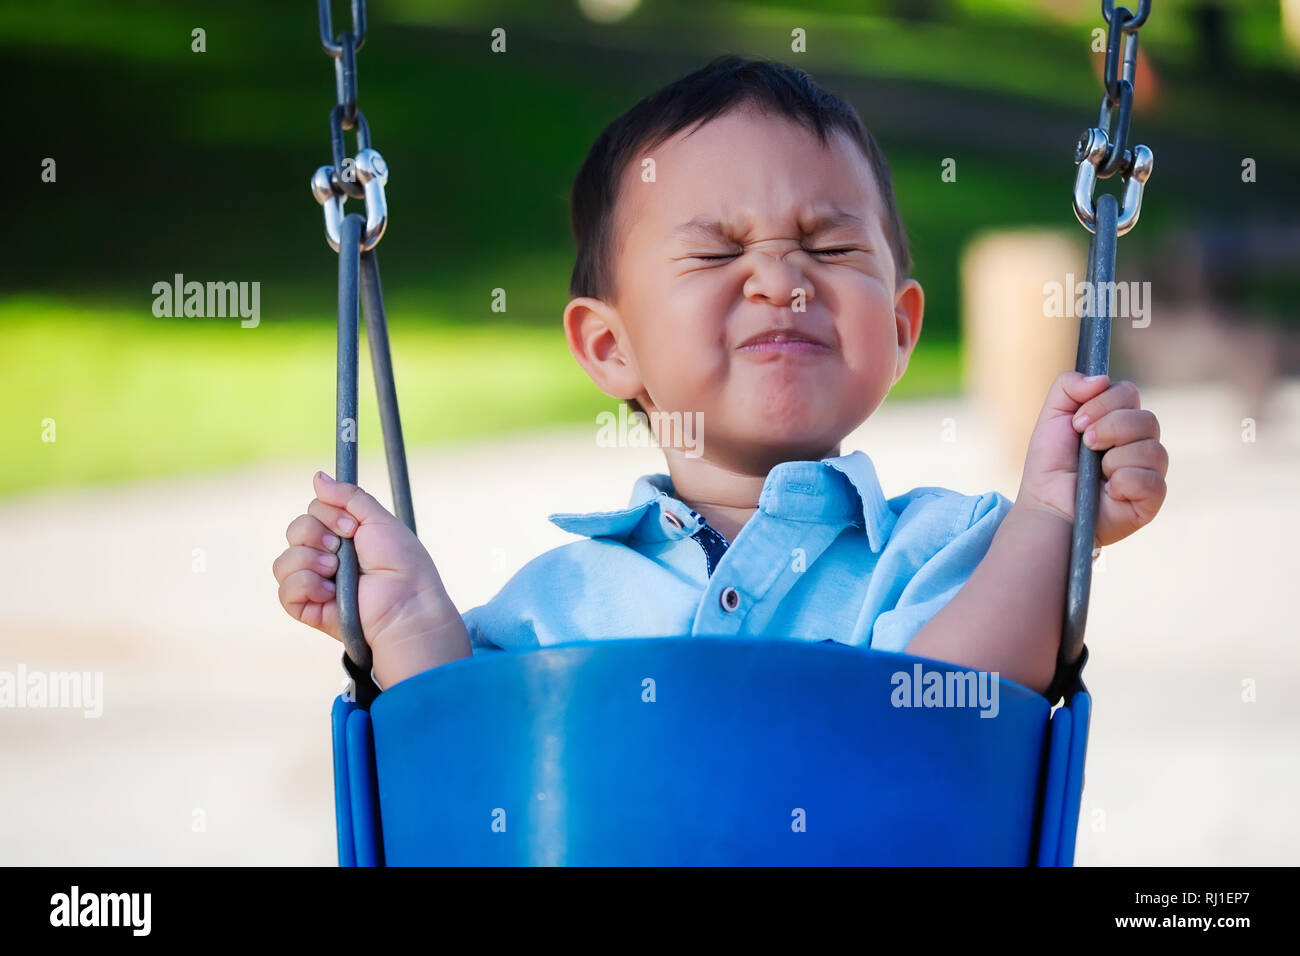 Petit garçon équitation une aire de swing avec une expression de peur, s'accrochant avec une main de fer parce qu'il a peur. Banque D'Images